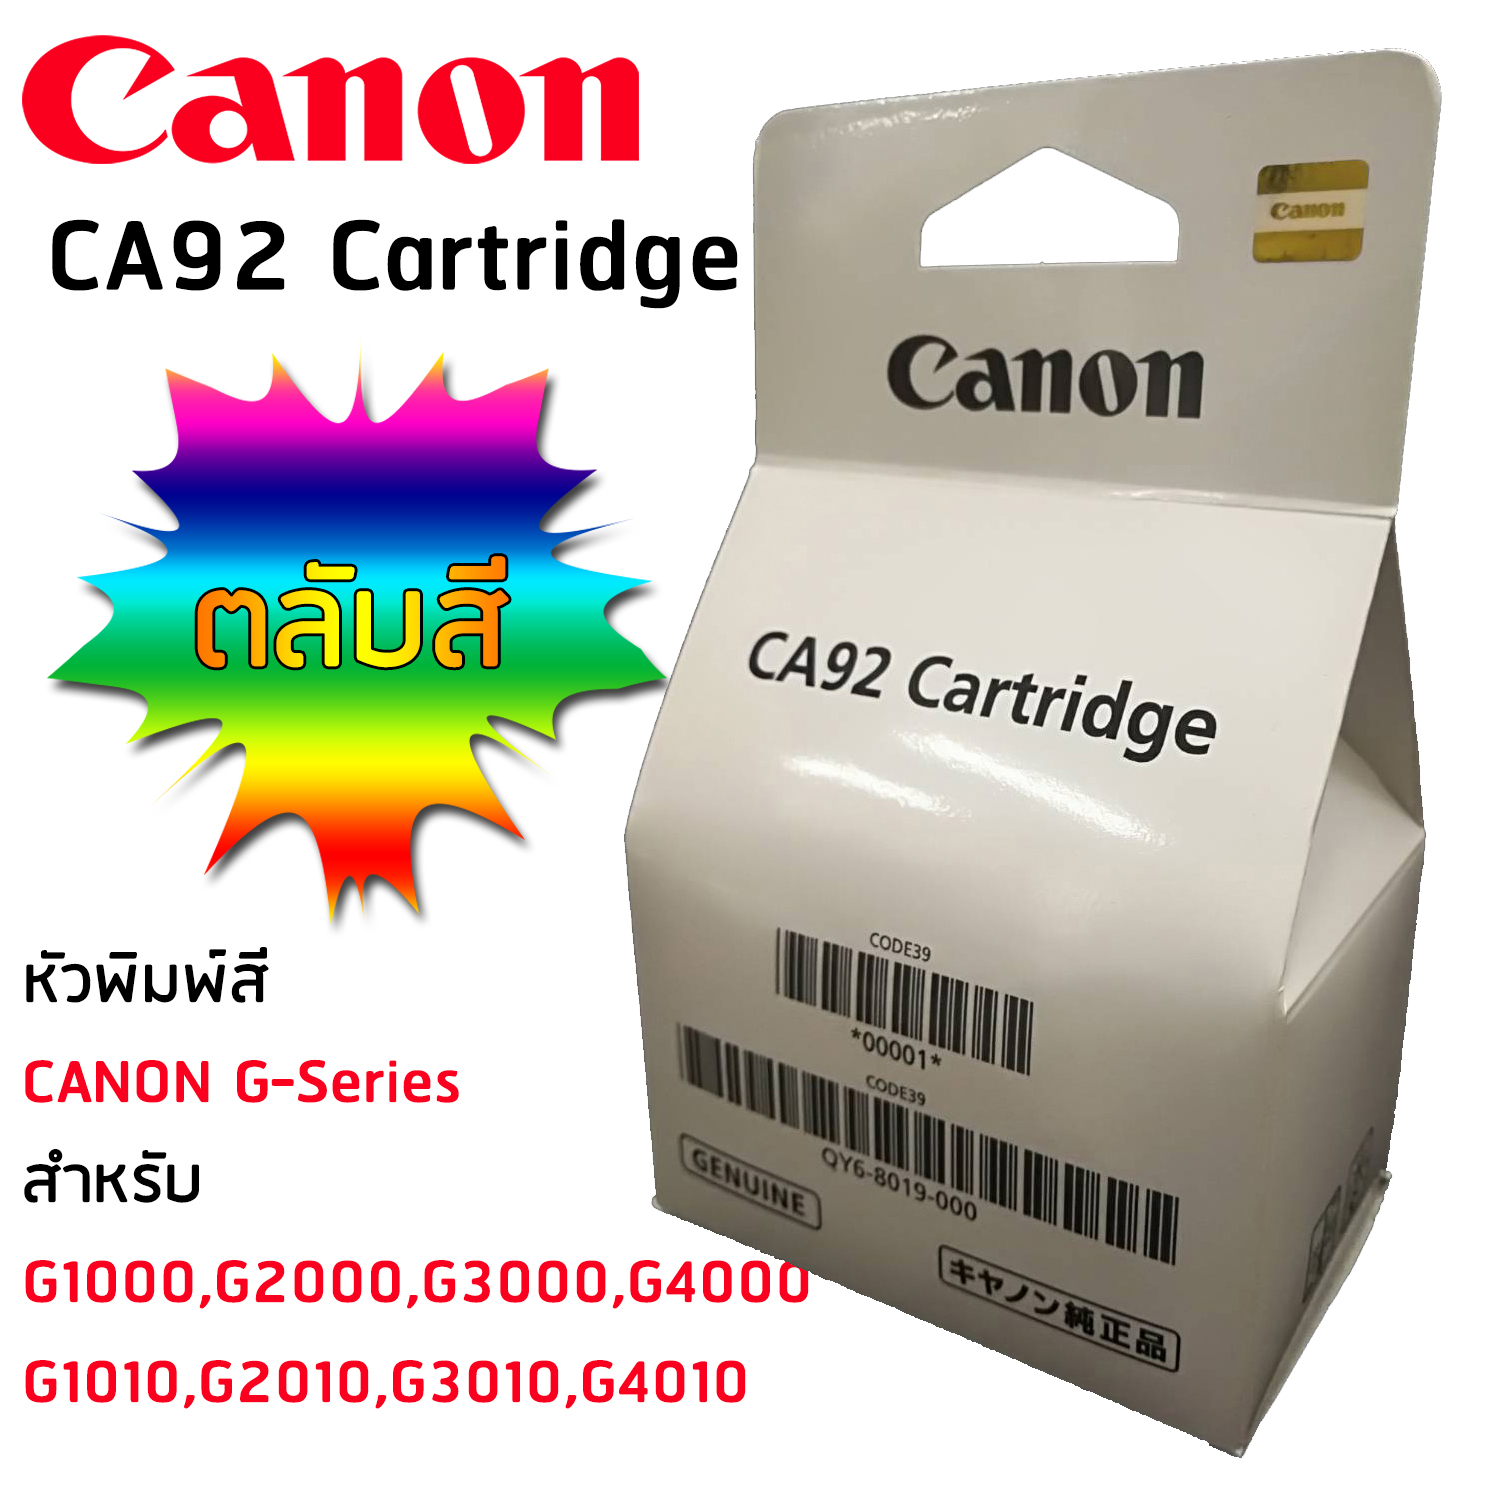 CANON Printhead CA92(QY6-8007-000) หัวพิมพ์แท้ CANON จำนวน 1 ชิ้น ใช้กับเครื่องCANON G1000/2000/3000